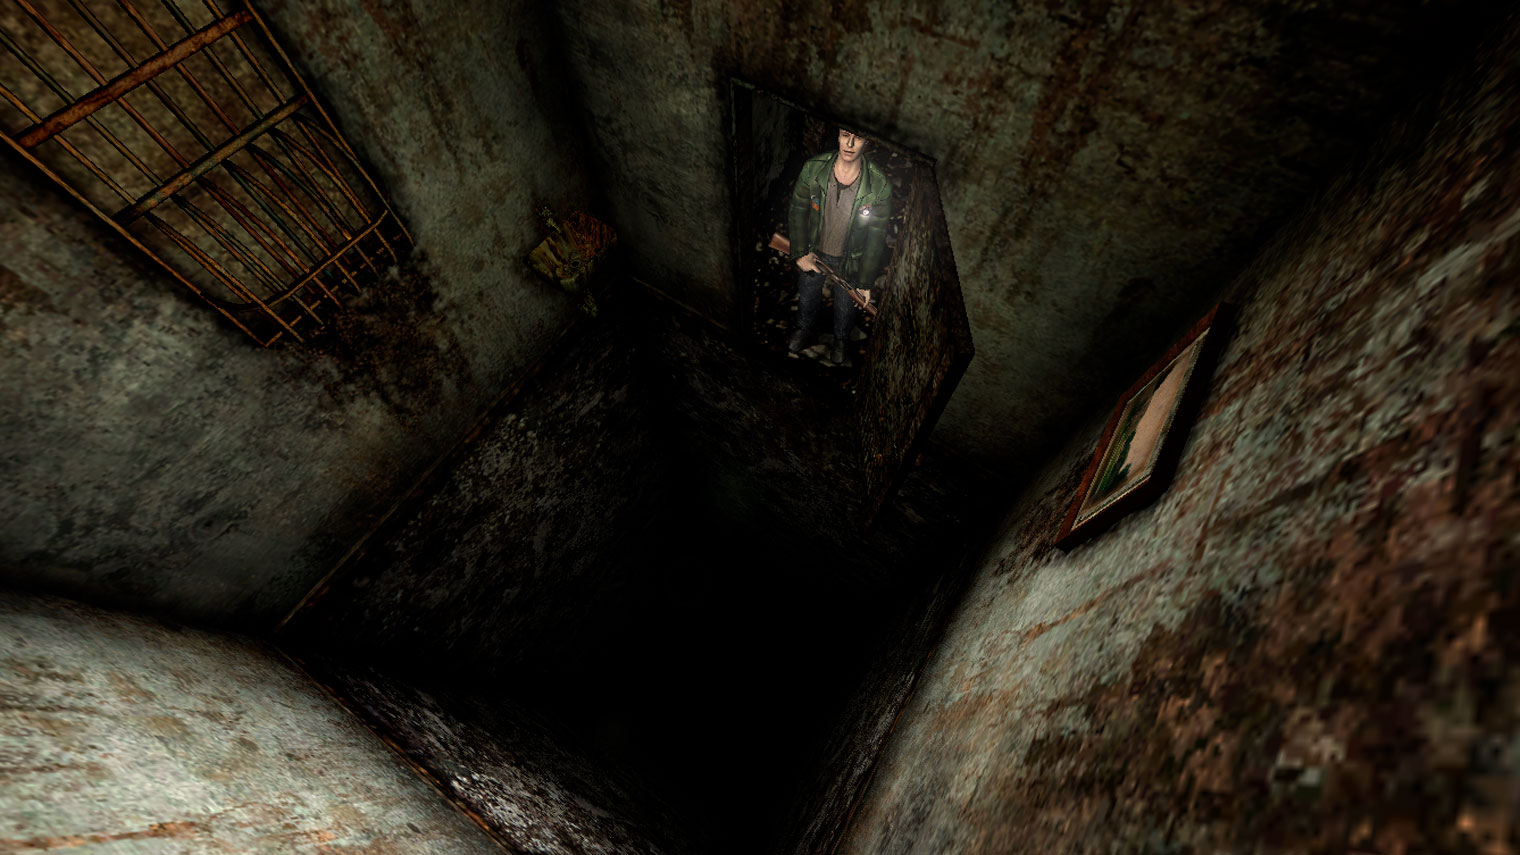 Насколько безопасно прыгать в такие дыры? Спросите Джеймса Сандерленда из Silent Hill 2, он в курсе. Кадр: Konami